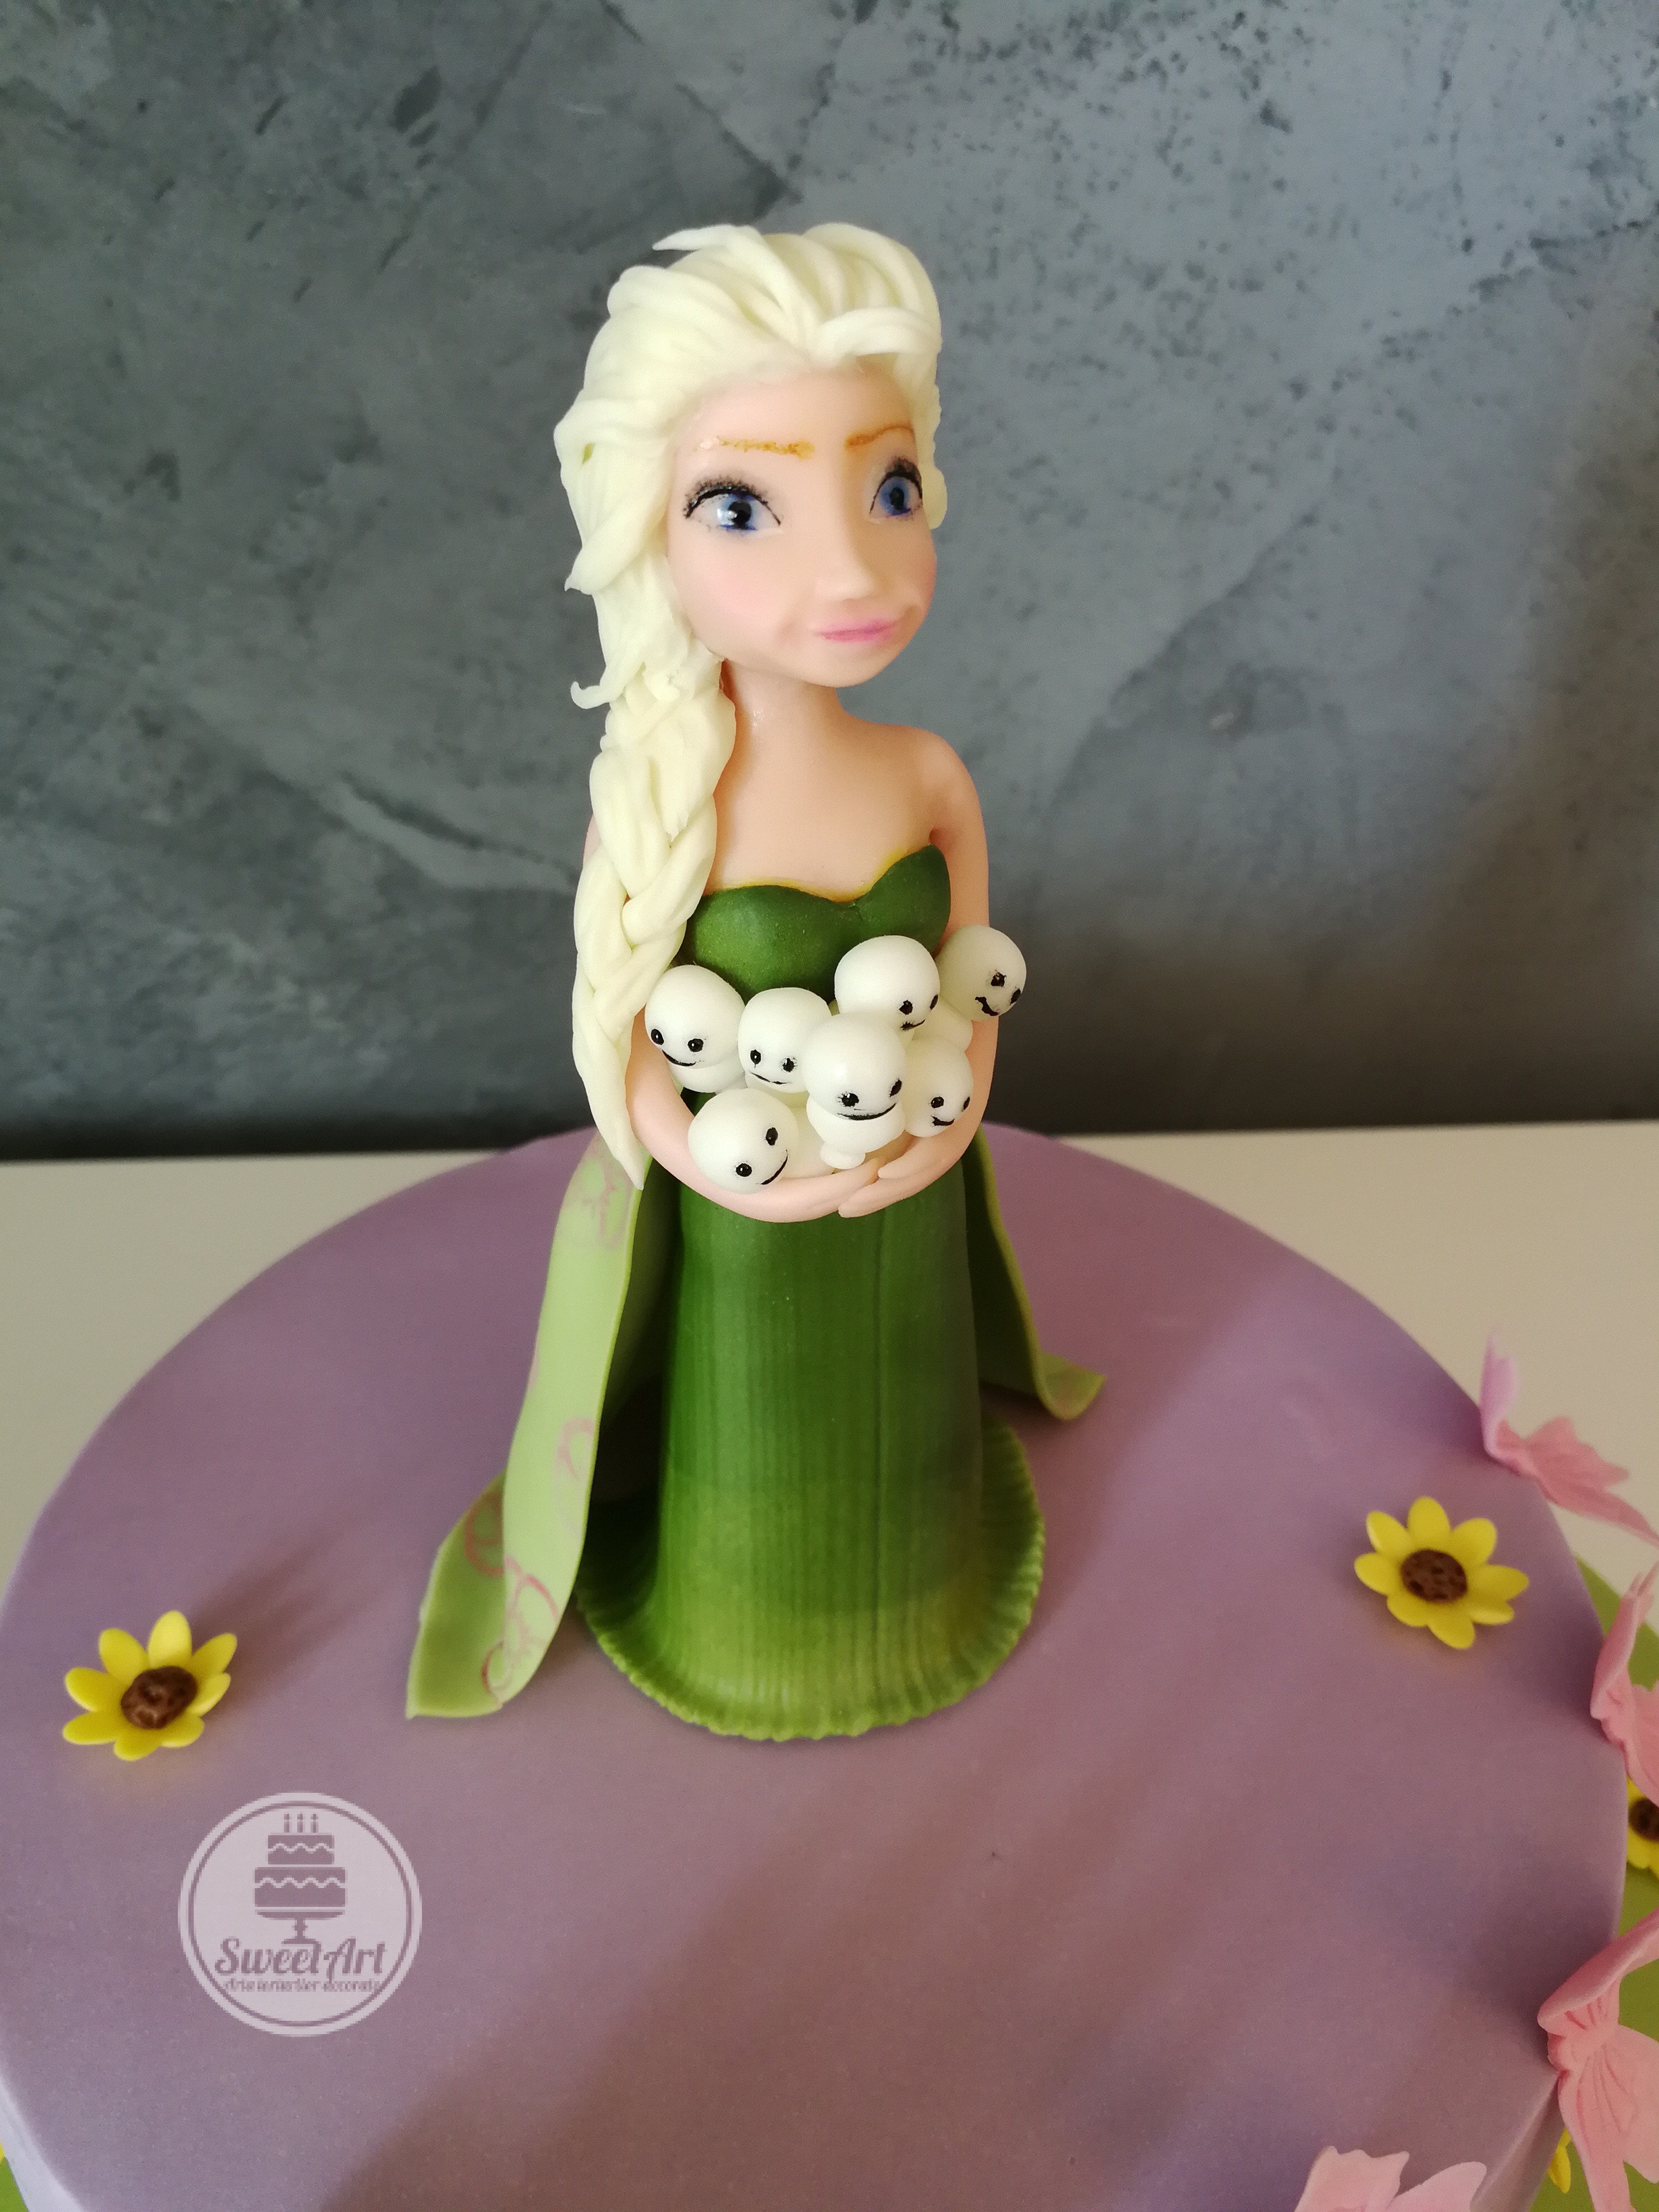 Tort Elsa - Febra Regatului de gheață - Frozen Fever: Elsa în rochie verde smarald cu omuleți de zăpadă în brațe, flori și floricele de floarea soarelui, floricele galbene, tort mov